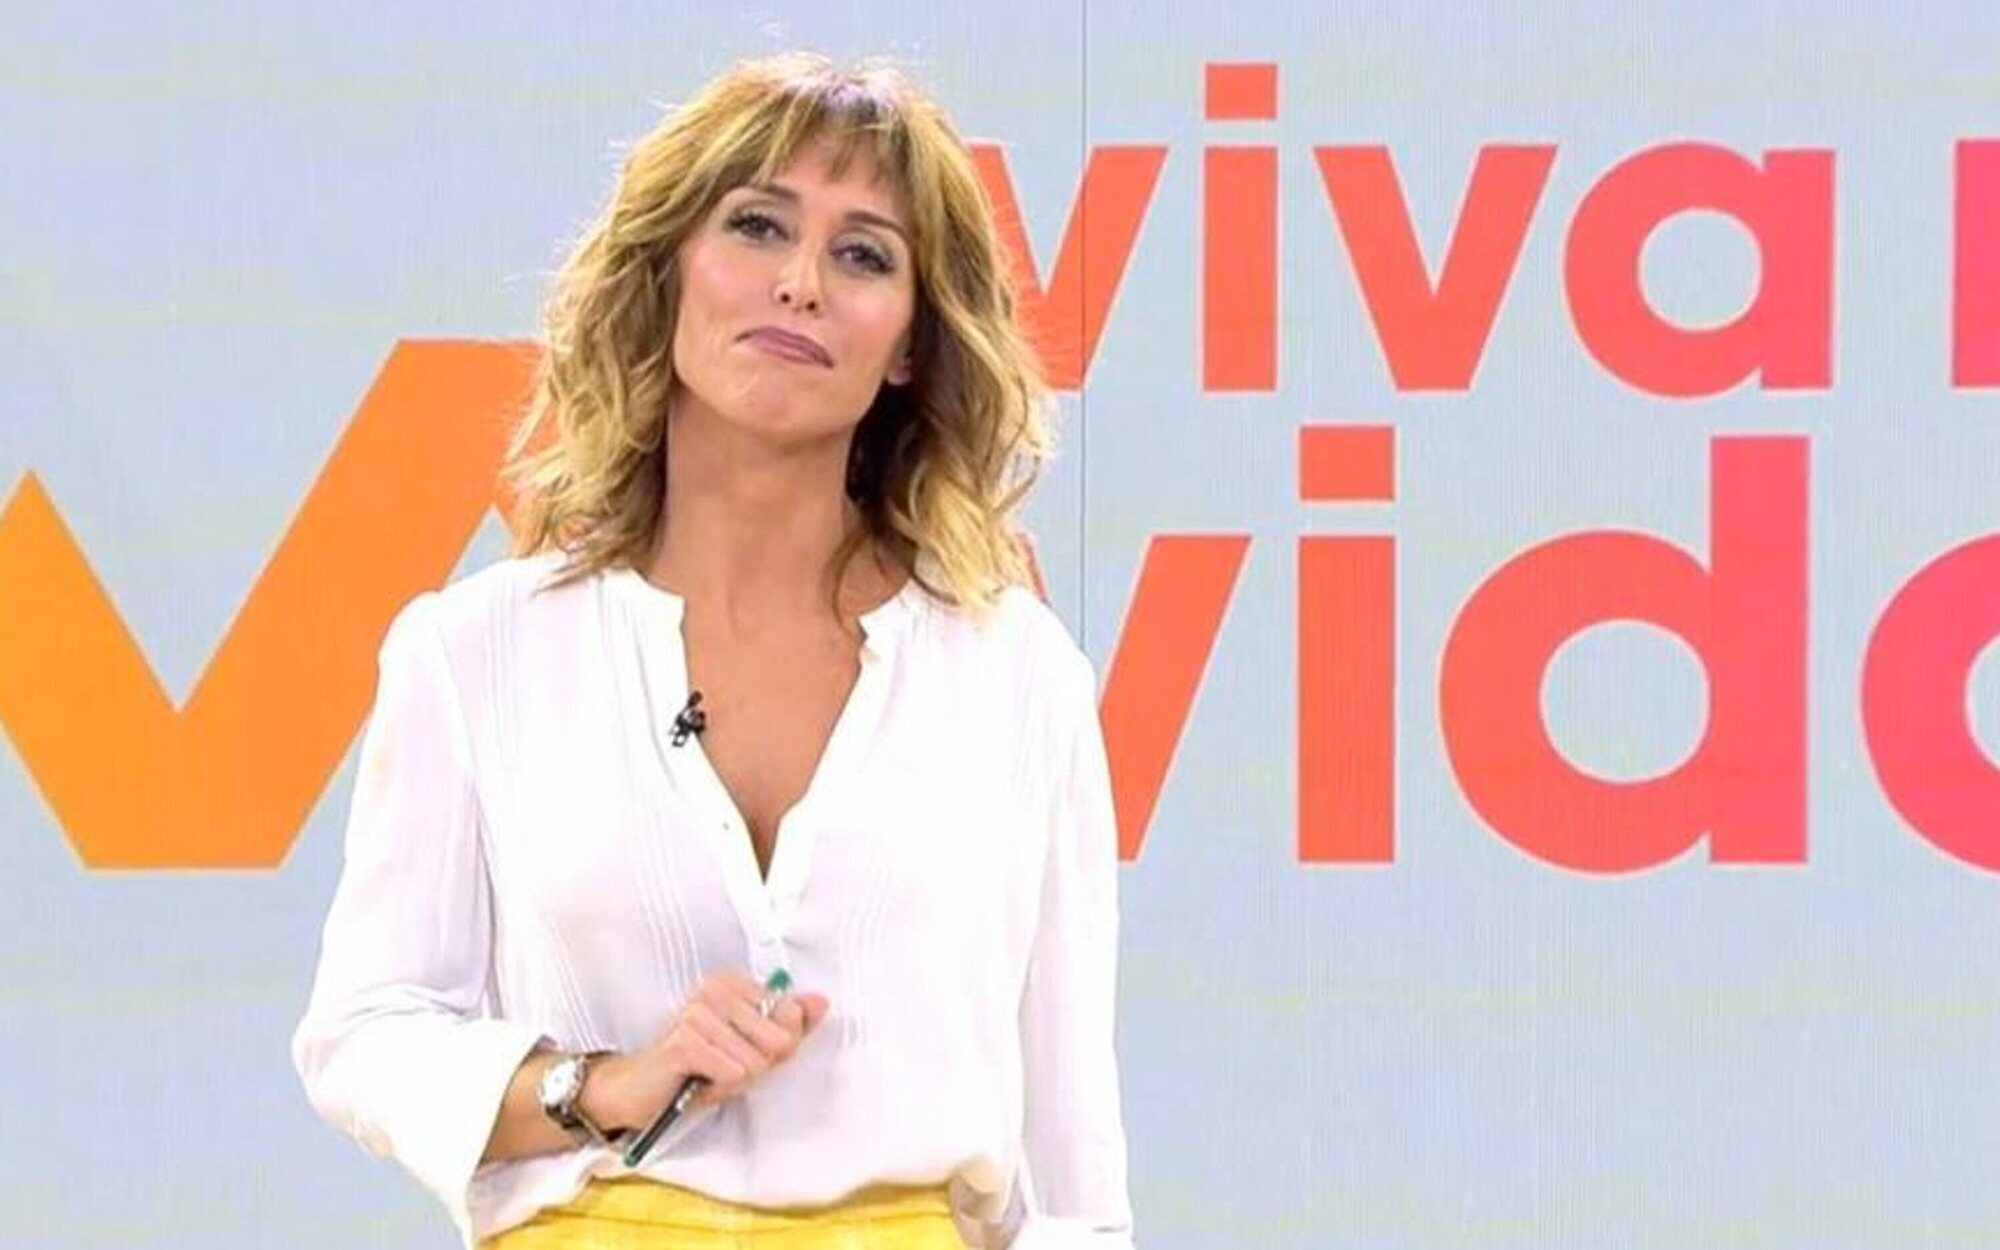 TVE ficha a dos miembros de 'Viva la vida' para su nuevo programa de actualidad